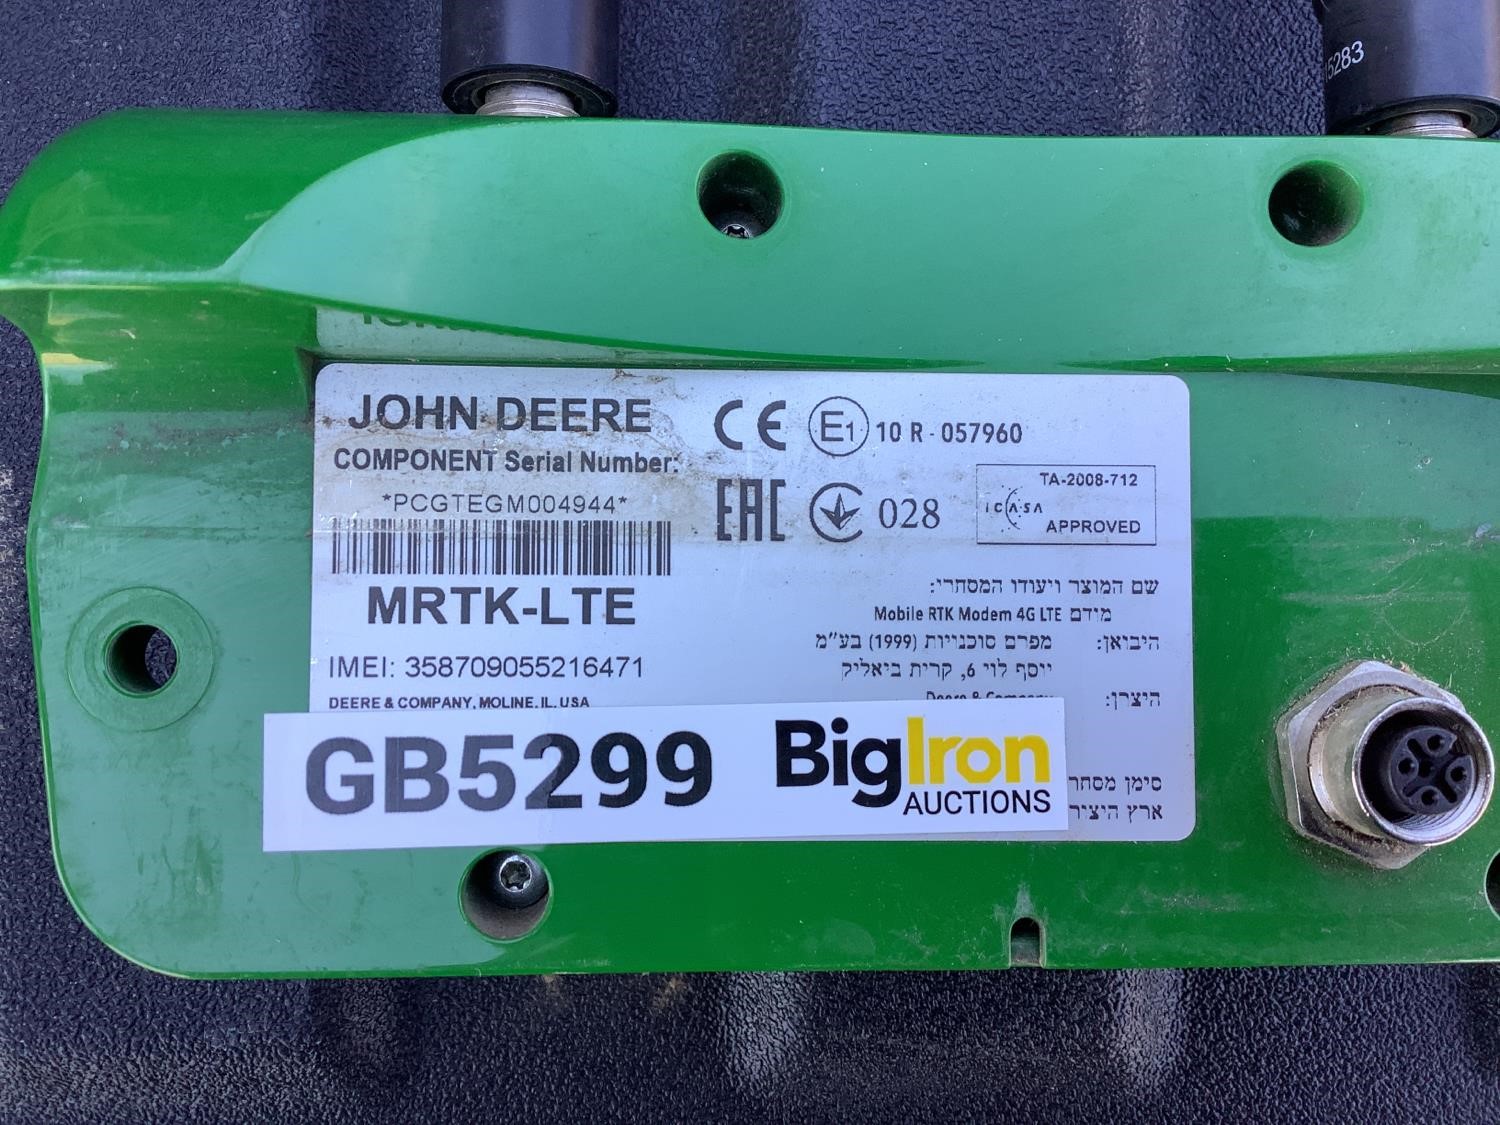 John Deere 4G LTE Mobile RTK Modem